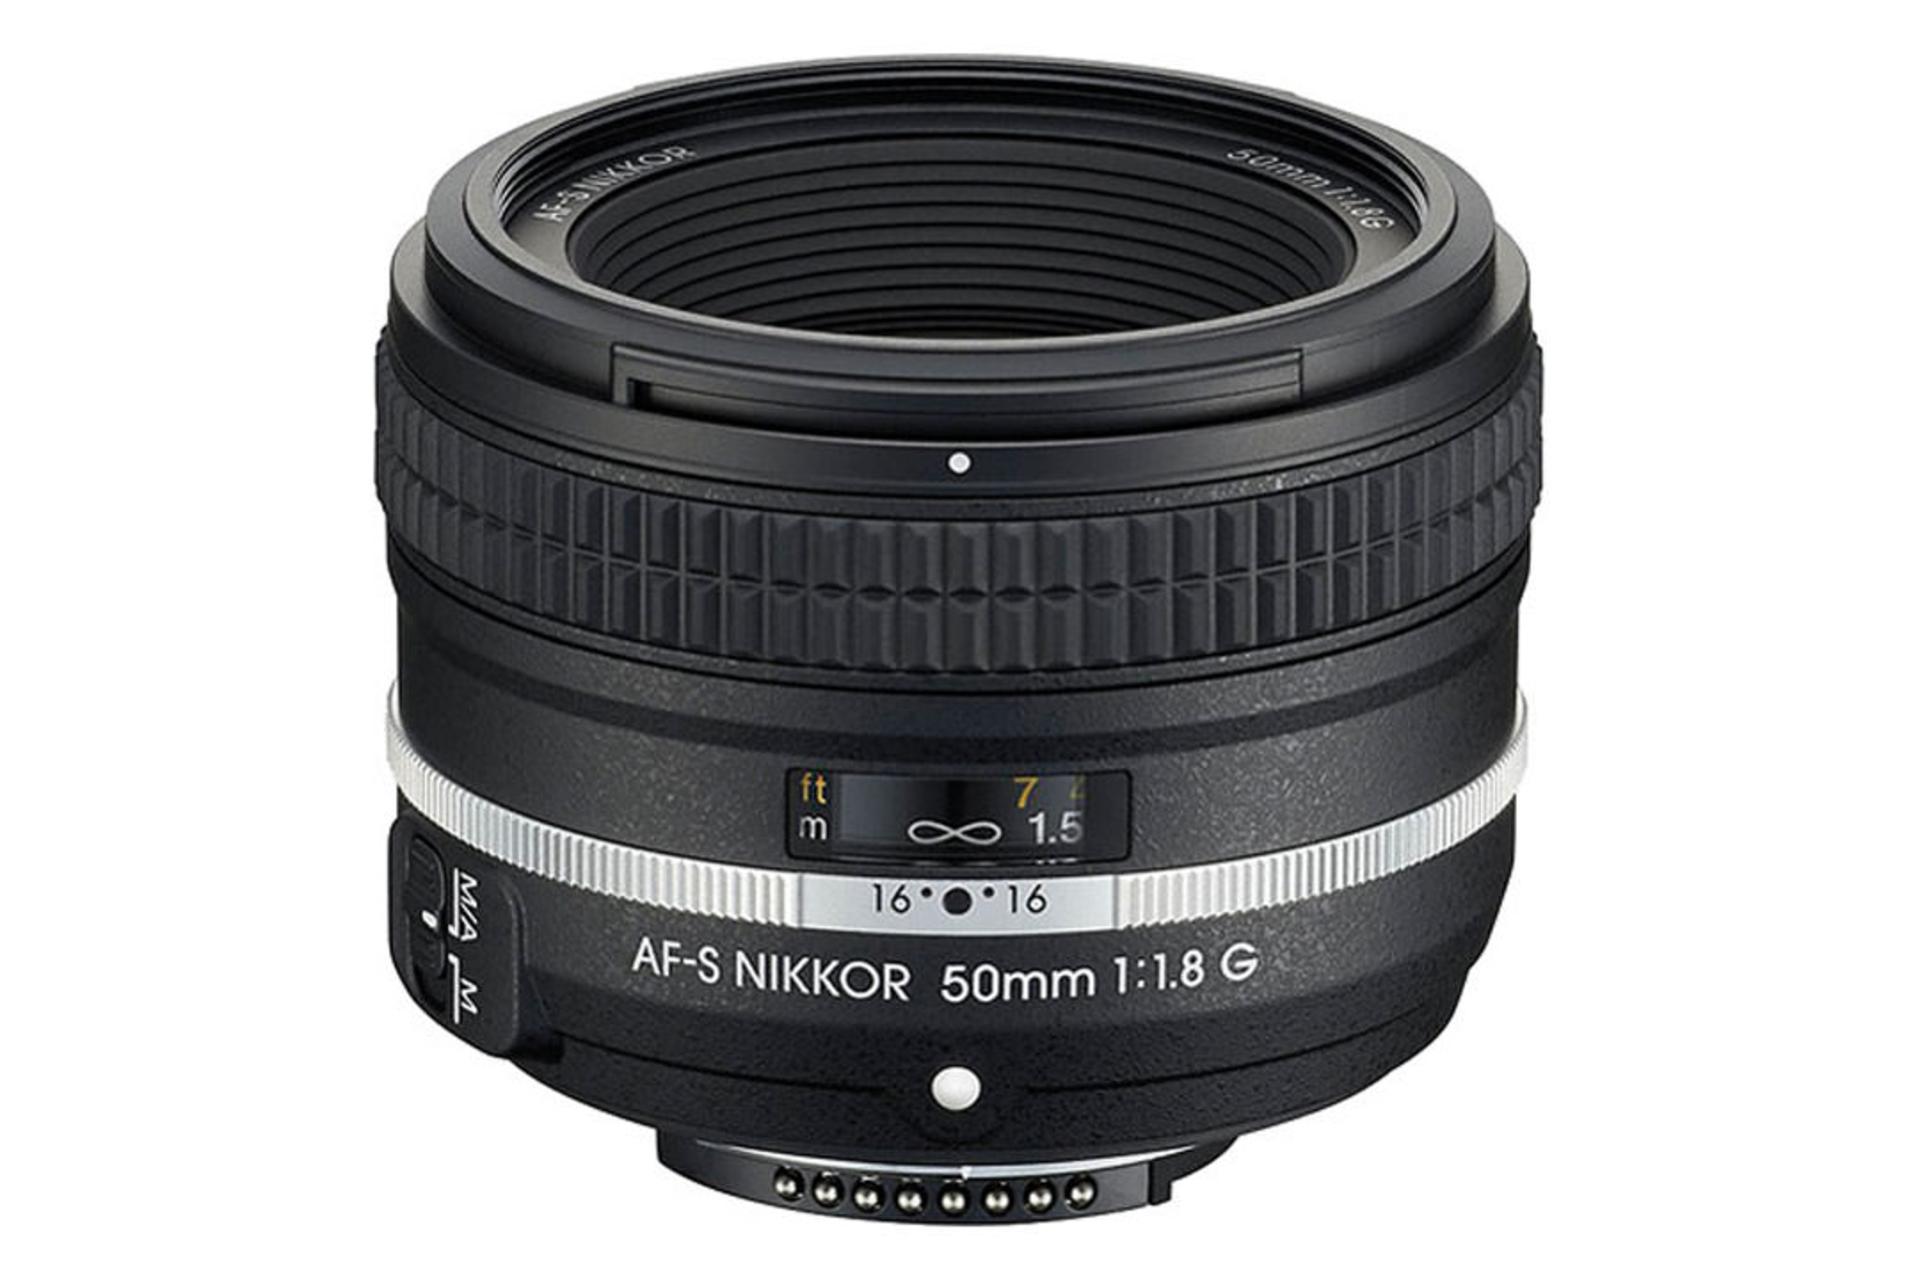 Nikon AF-S Nikkor 50mm f/1.8G Special Edition	